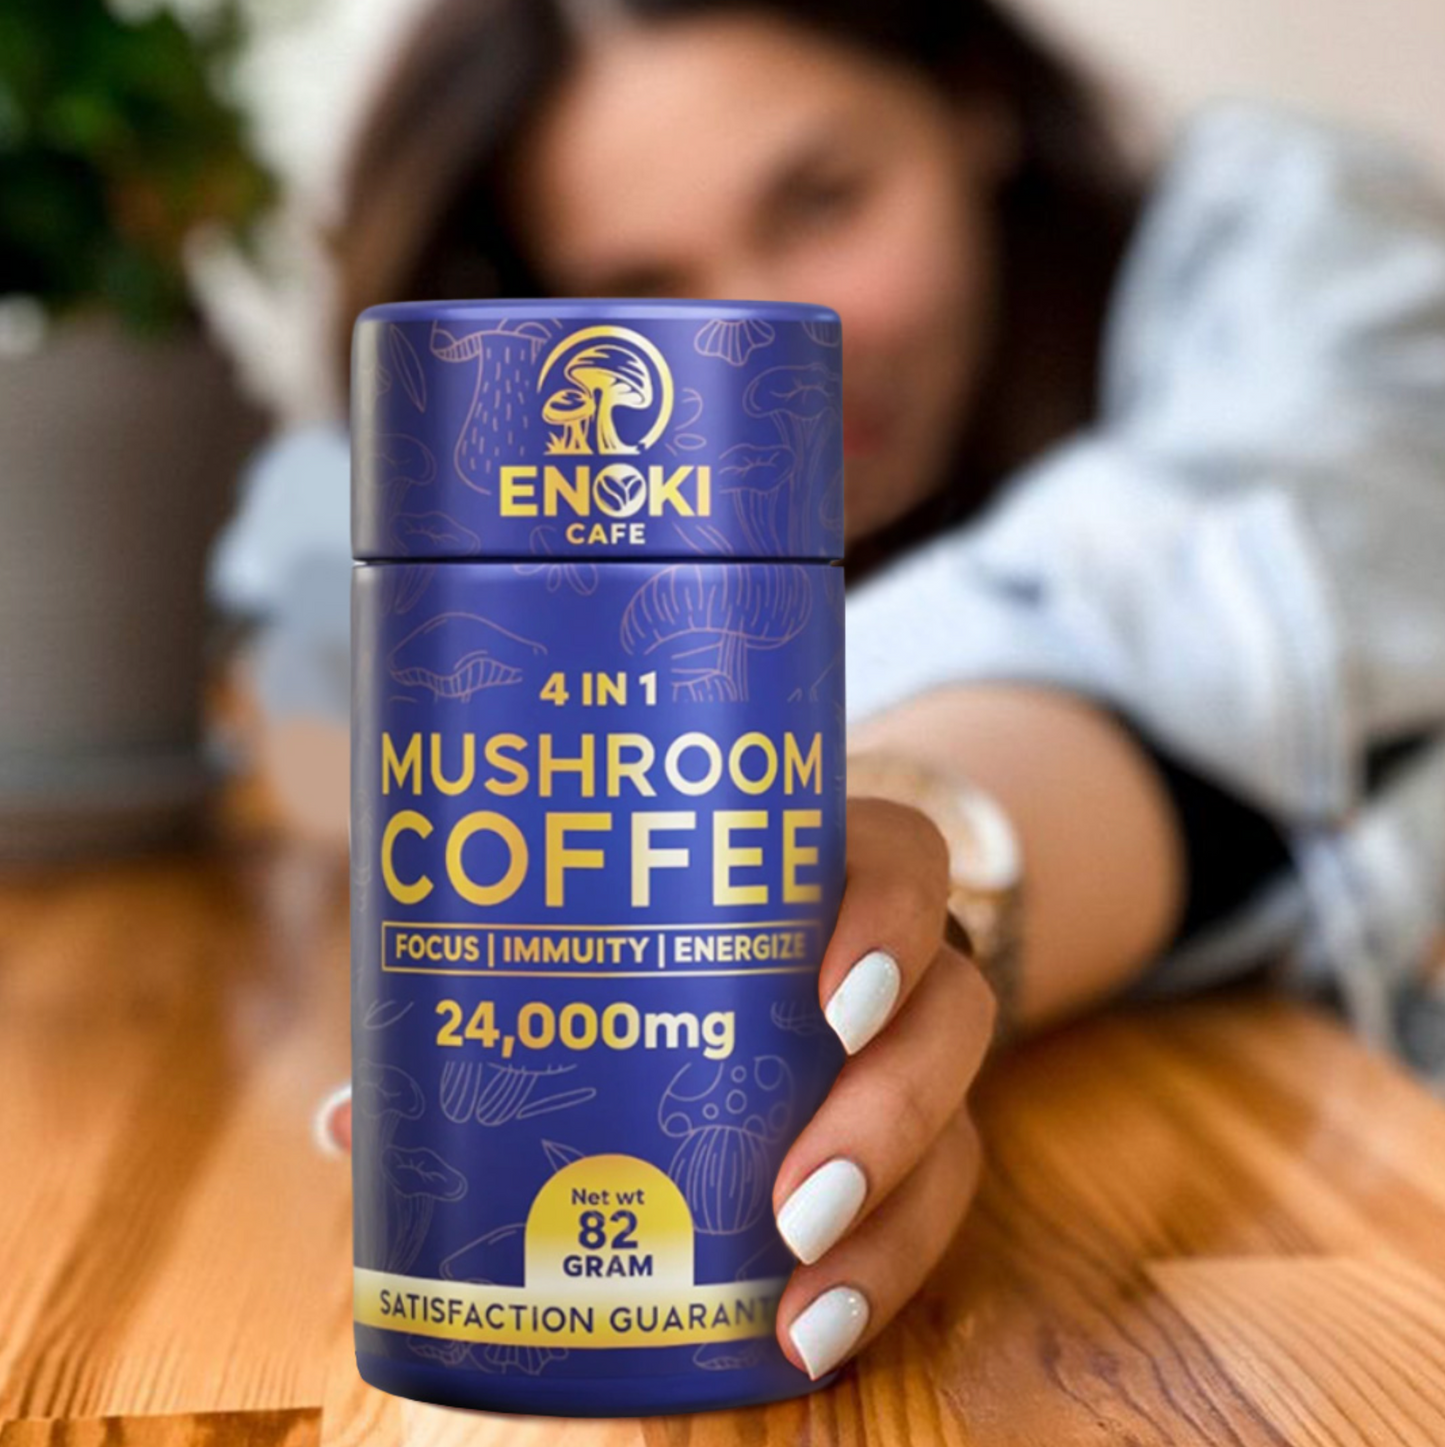 4 in 1 Mushroom Coffee - 24k MG